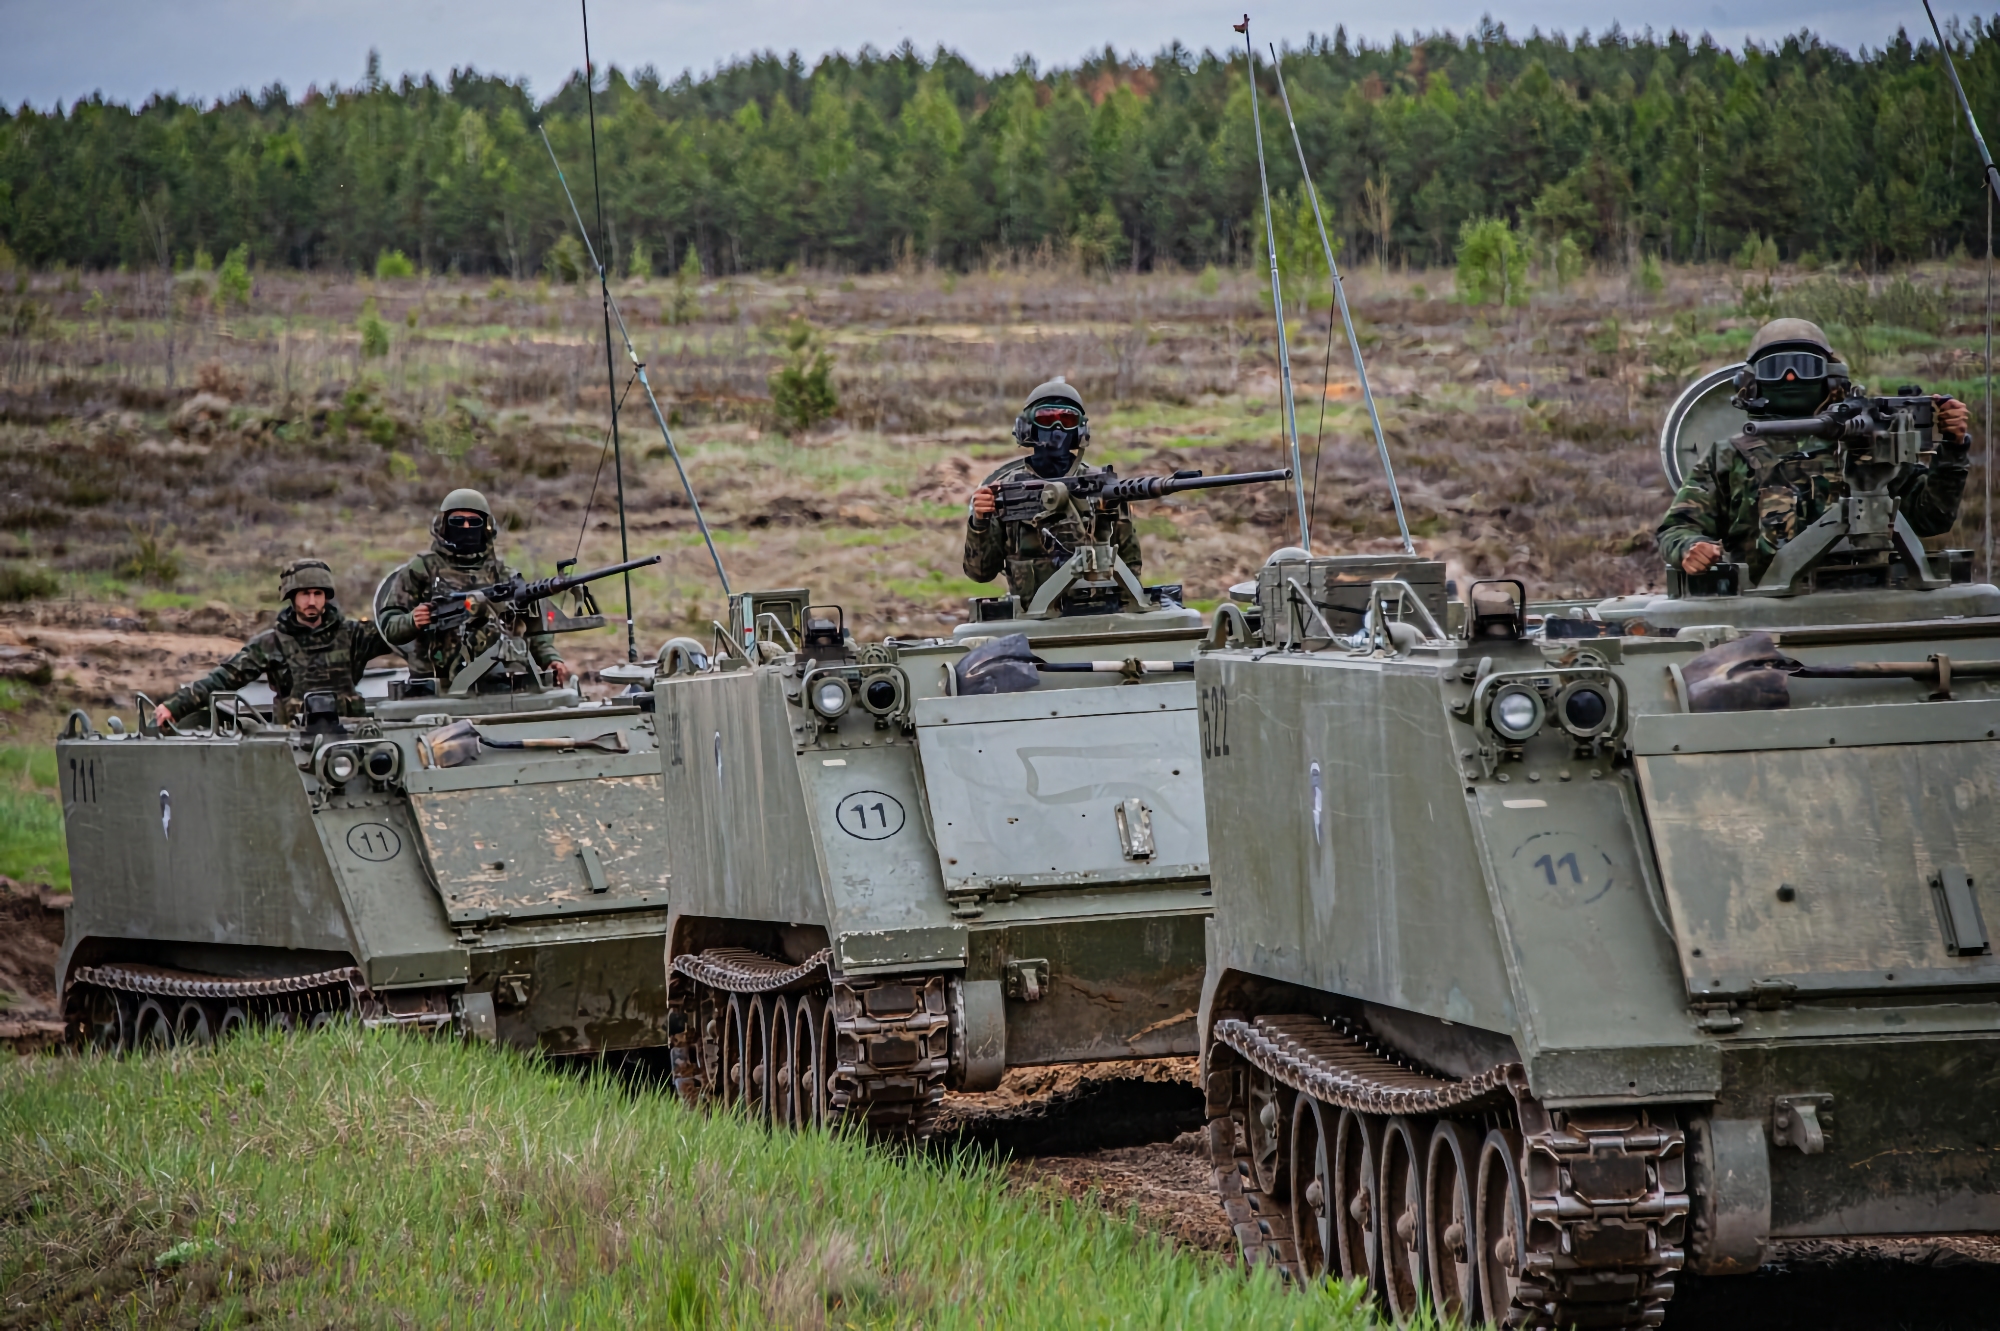 Bélgica, Países Bajos y Luxemburgo transferirán a las AFU vehículos blindados de transporte de tropas M113 con sistemas de armas teledirigidos